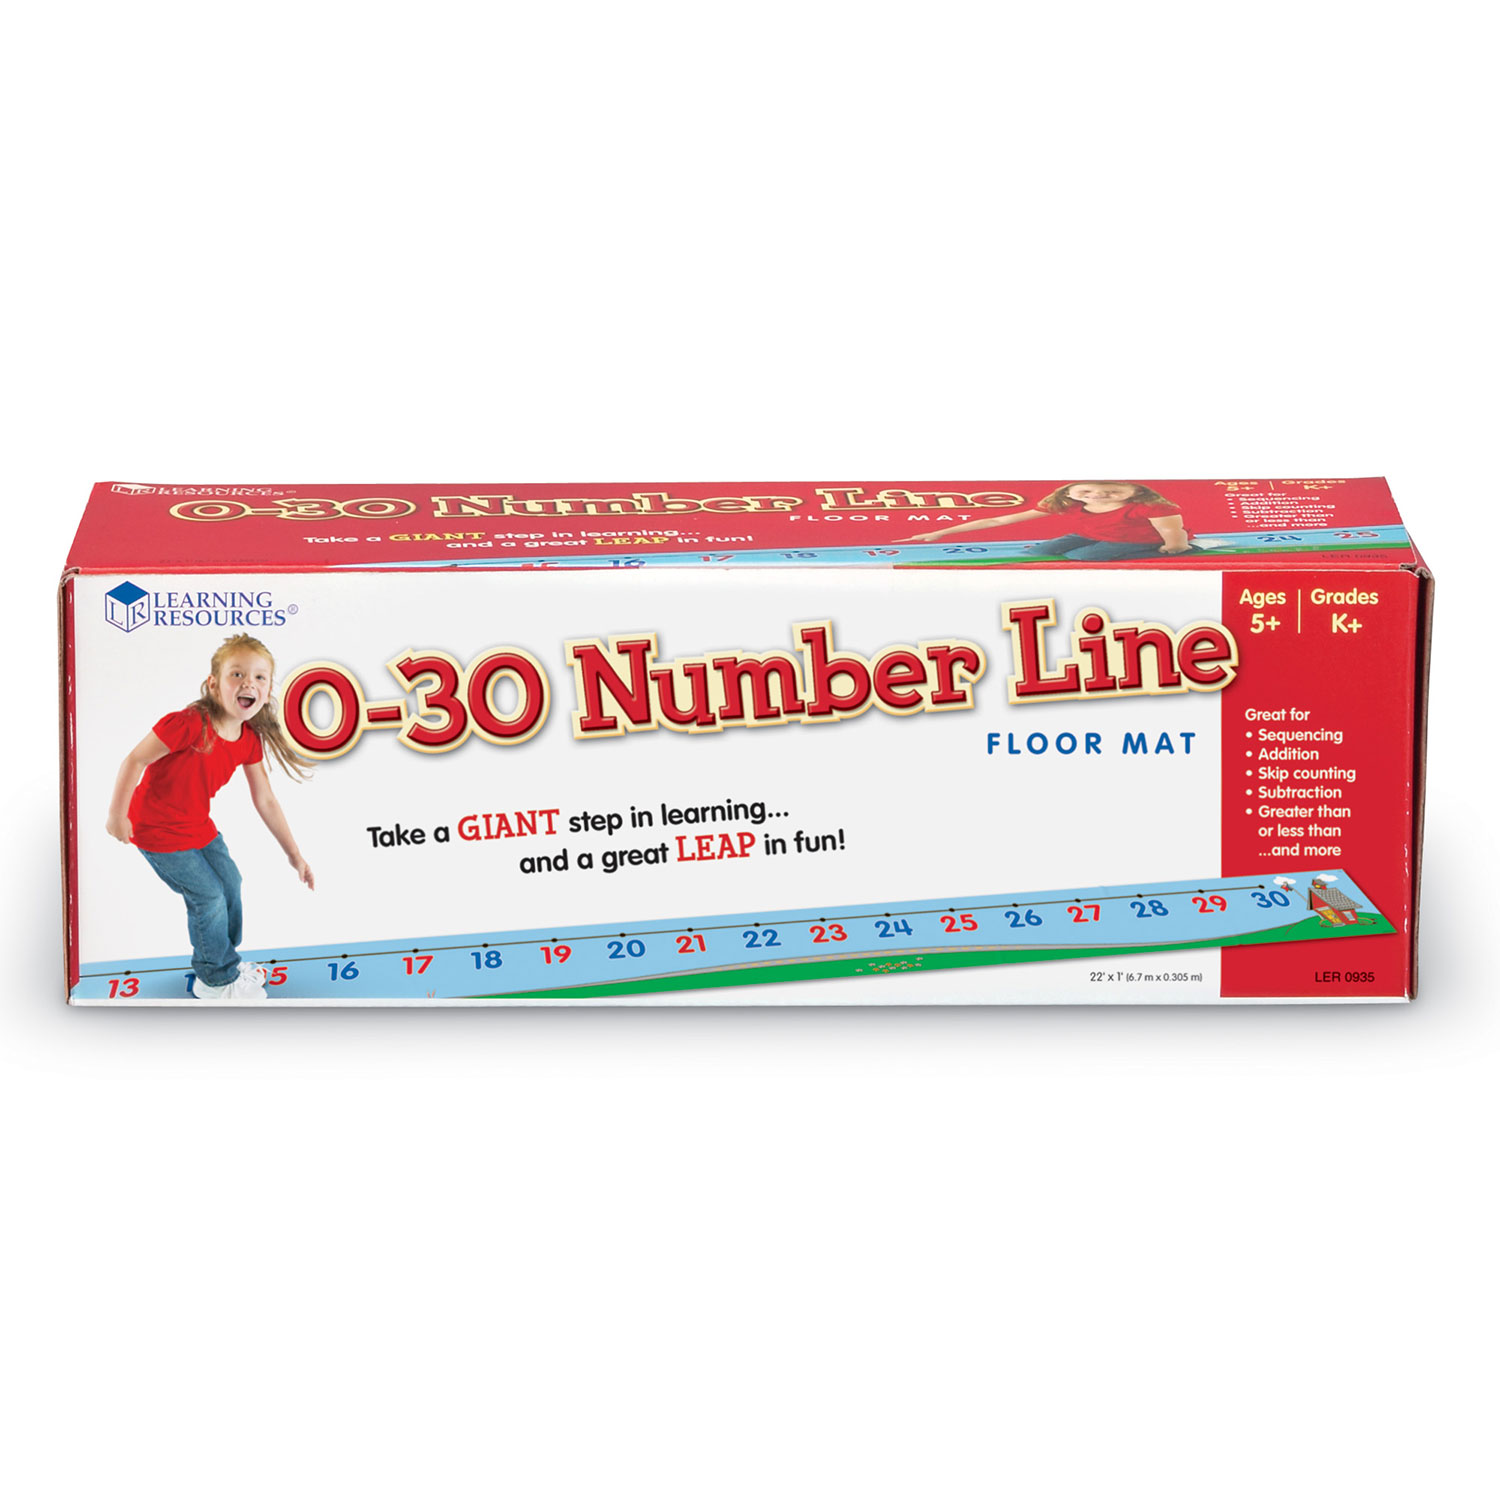 Number Line Floor Mat